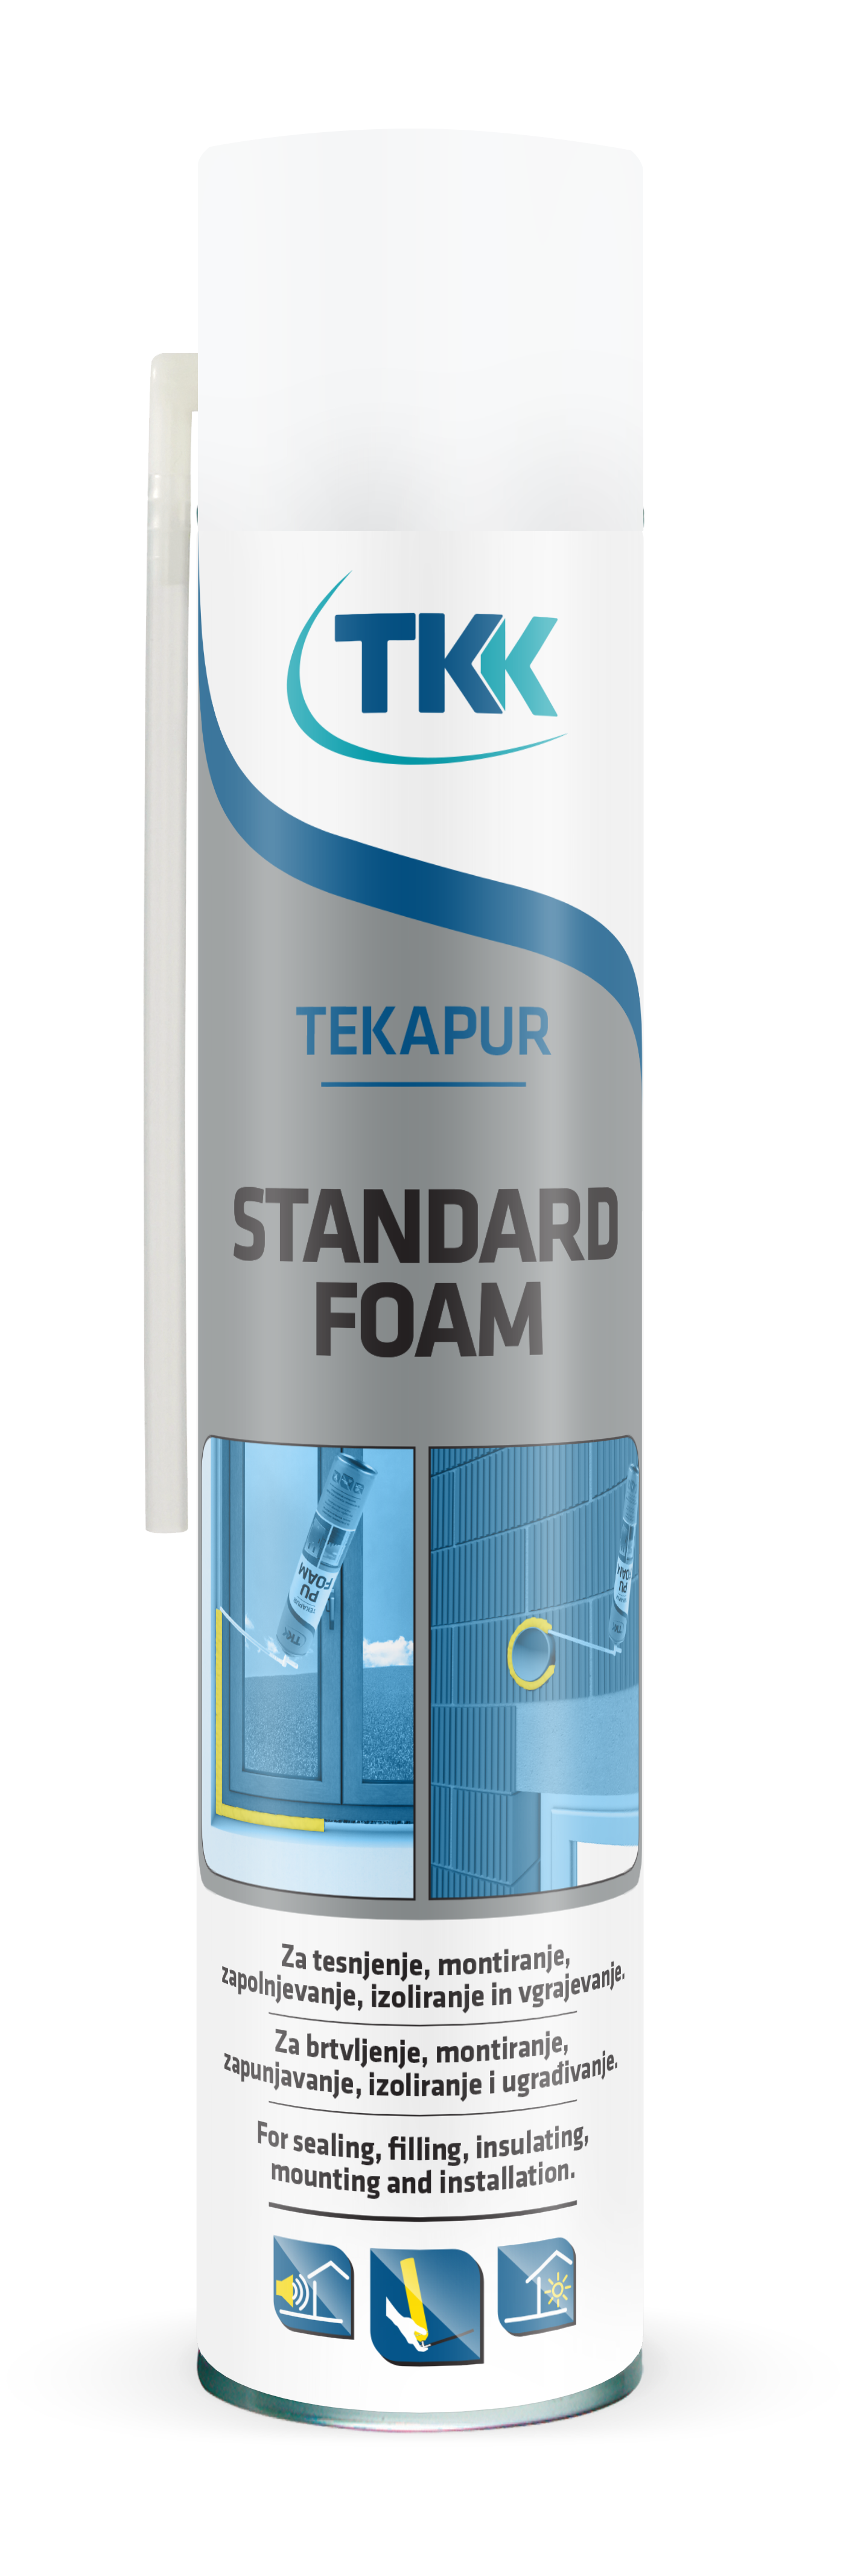 TEKAPUR Spray бытовая монтажная пена 750 мл.